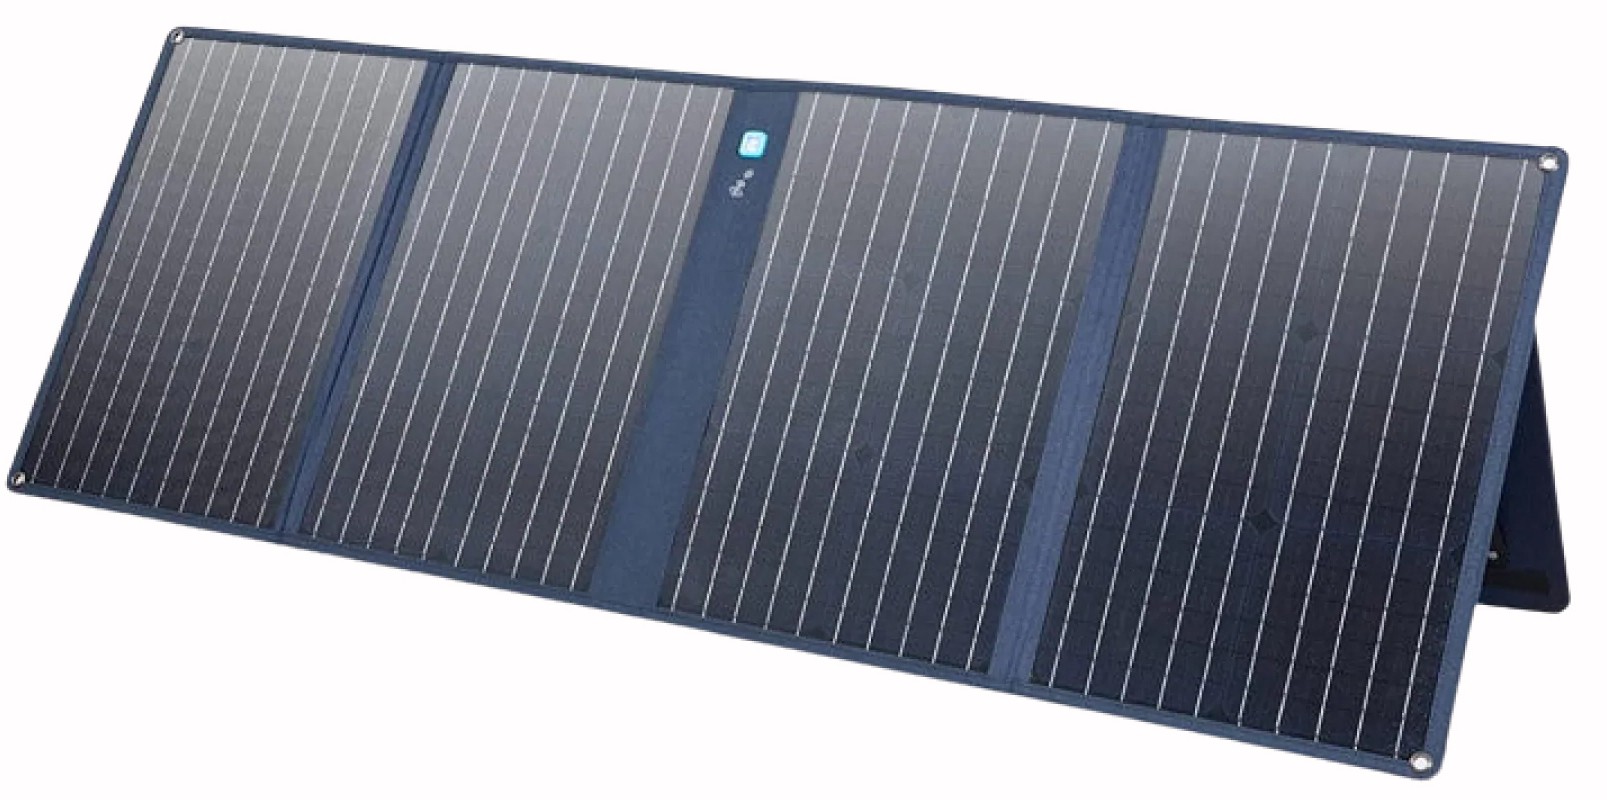 Цена солнечная панель Anker 625 Solar Panel 100W в Одессе